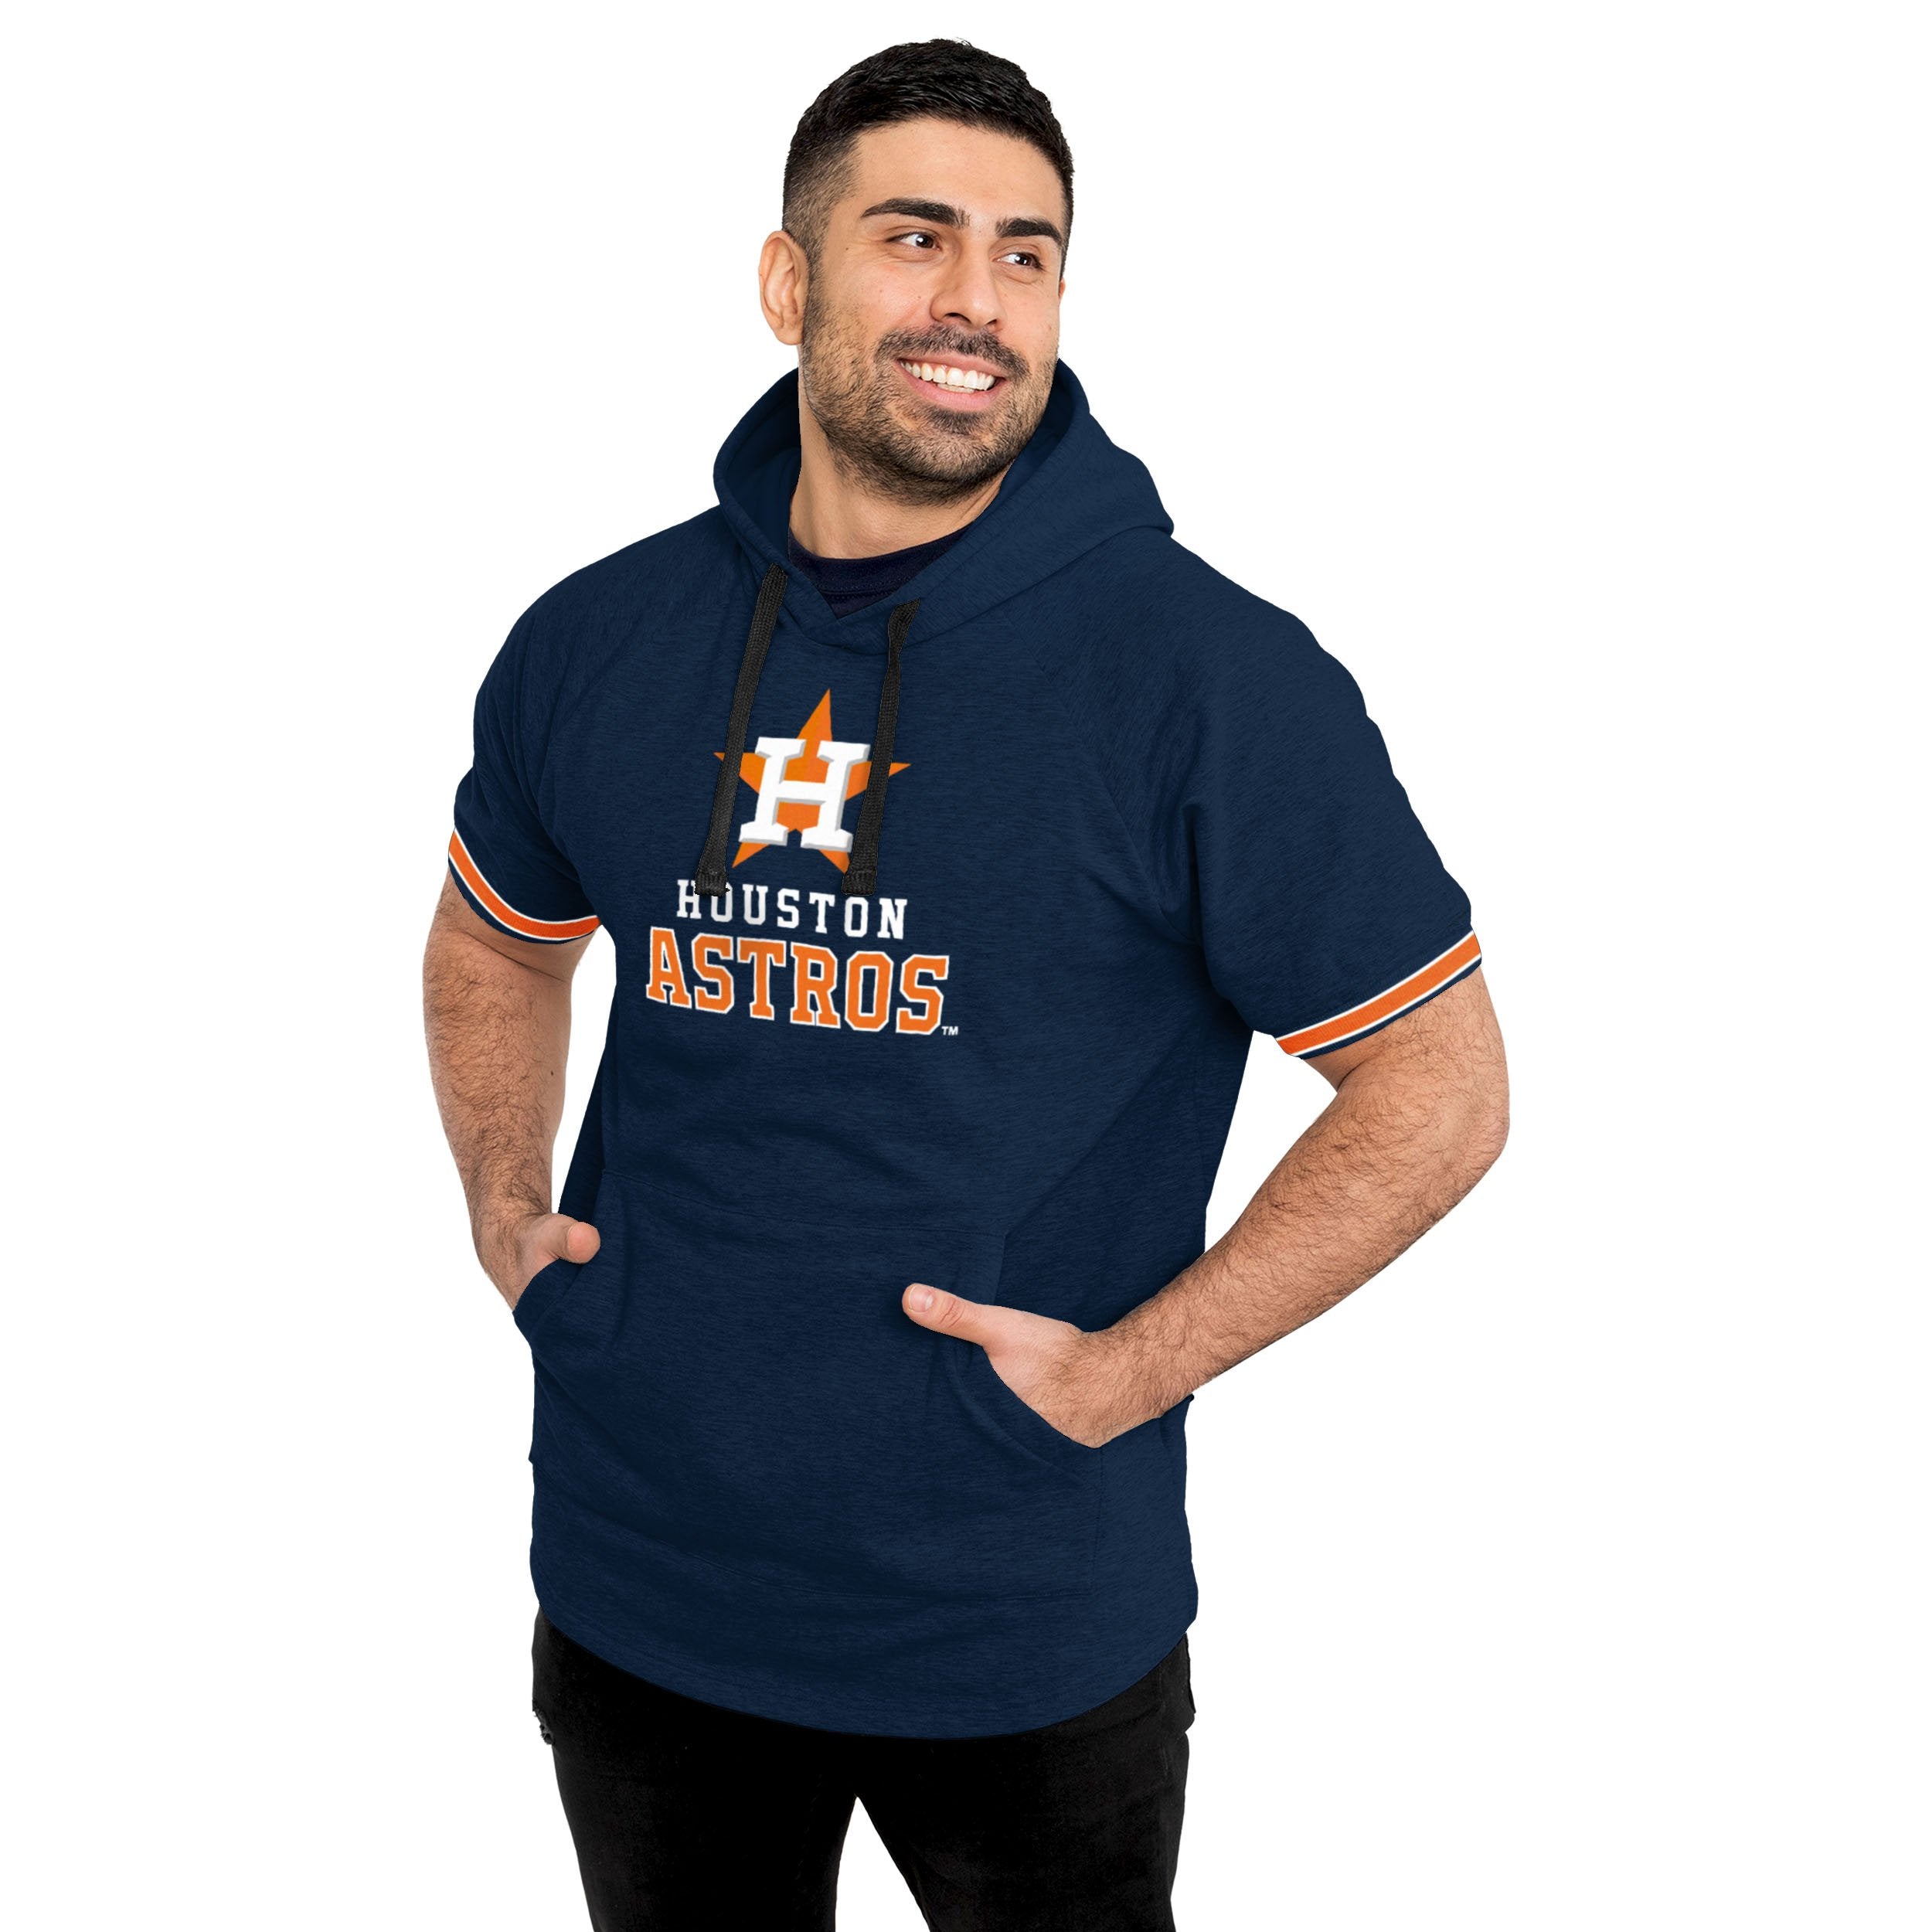 Officially Licensed MLB Men's Houston Astros Navy T-Shirt